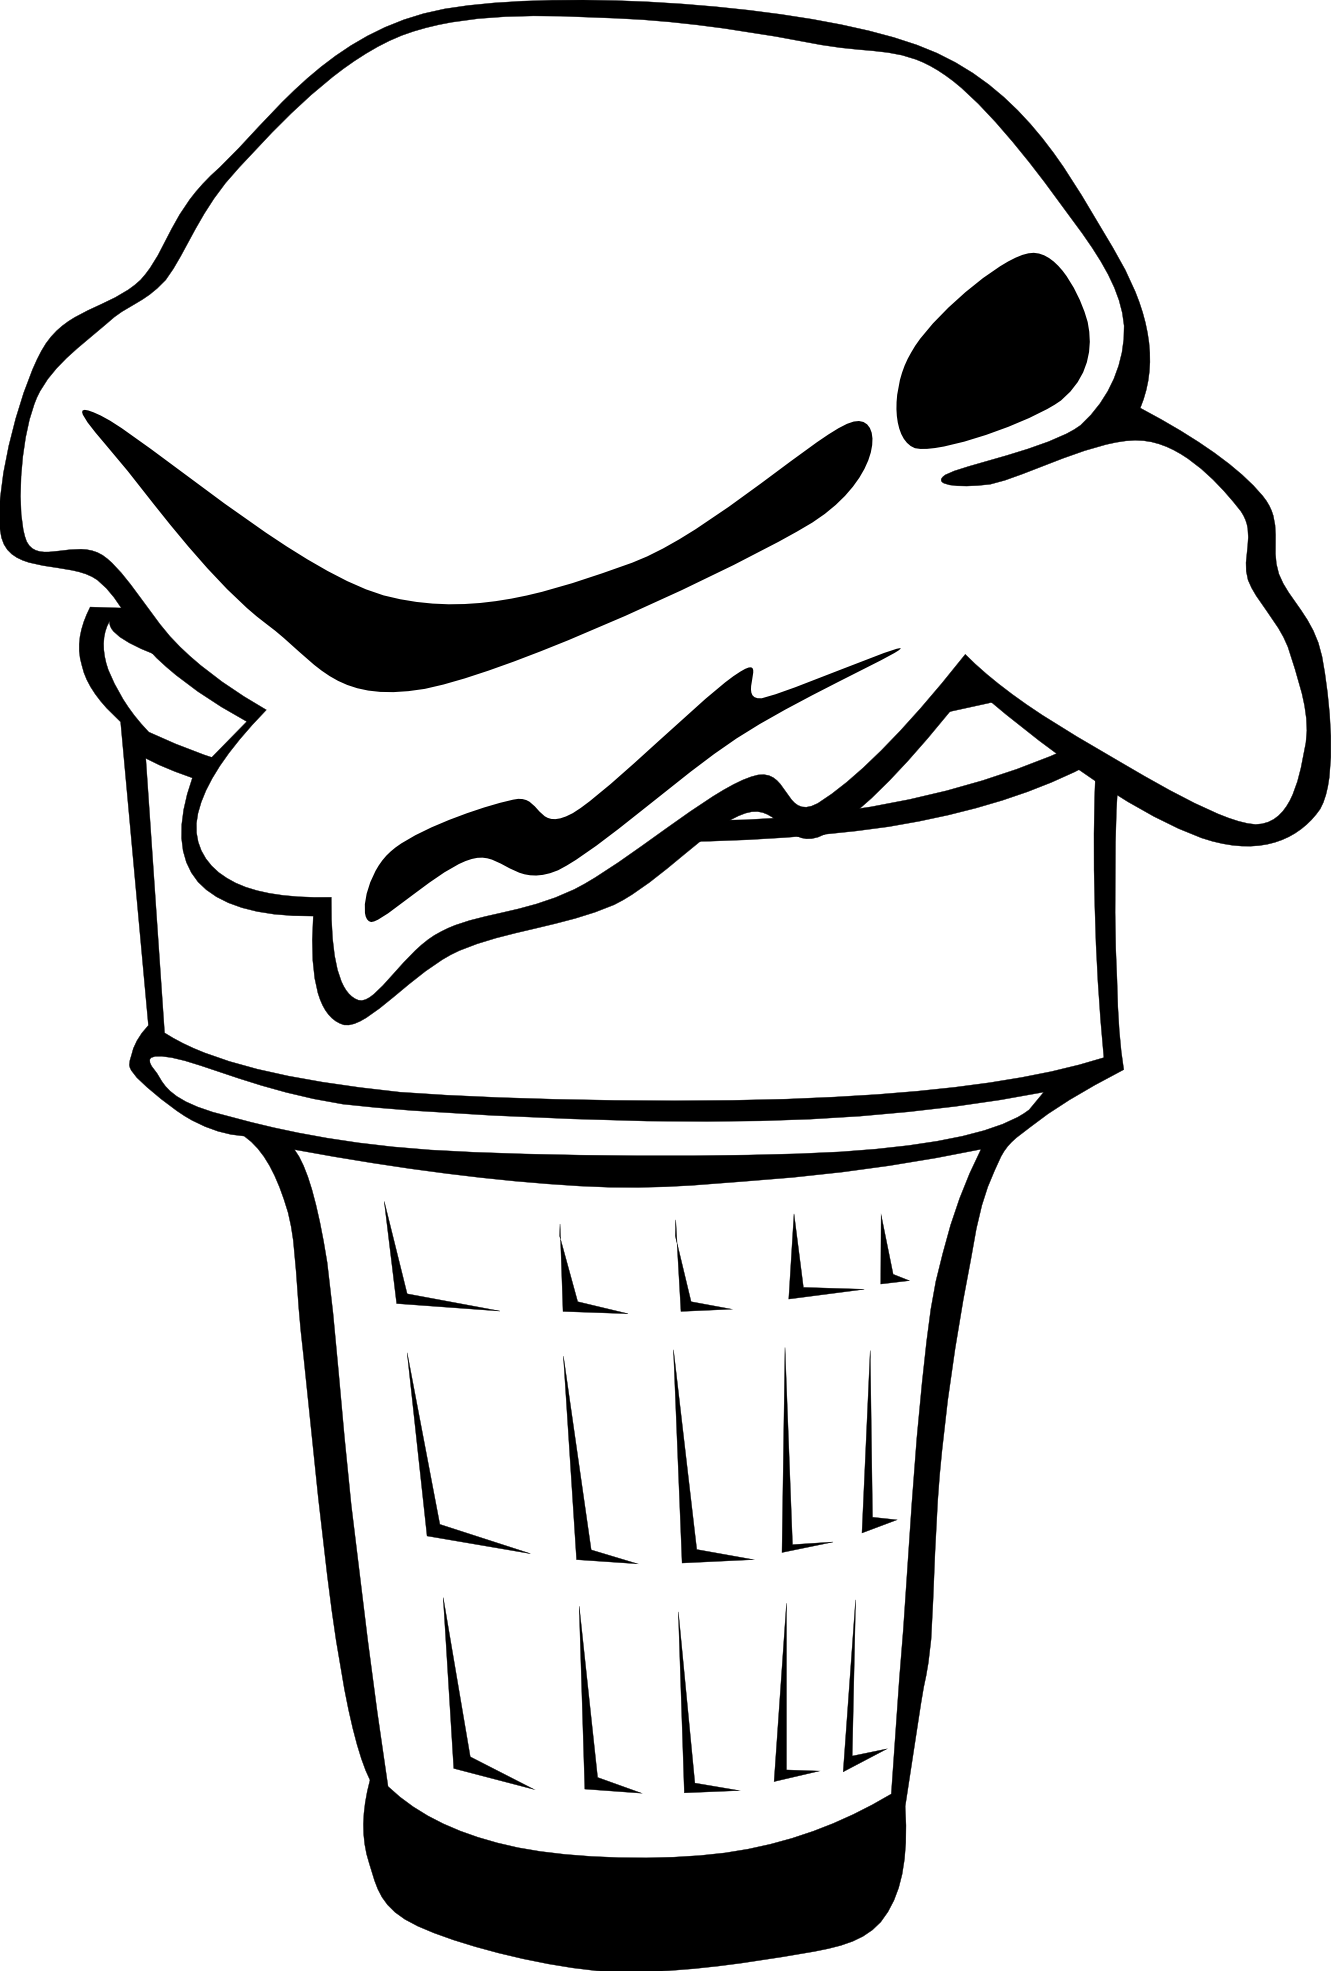 ice cream cones ff menu 3 black white line art ...